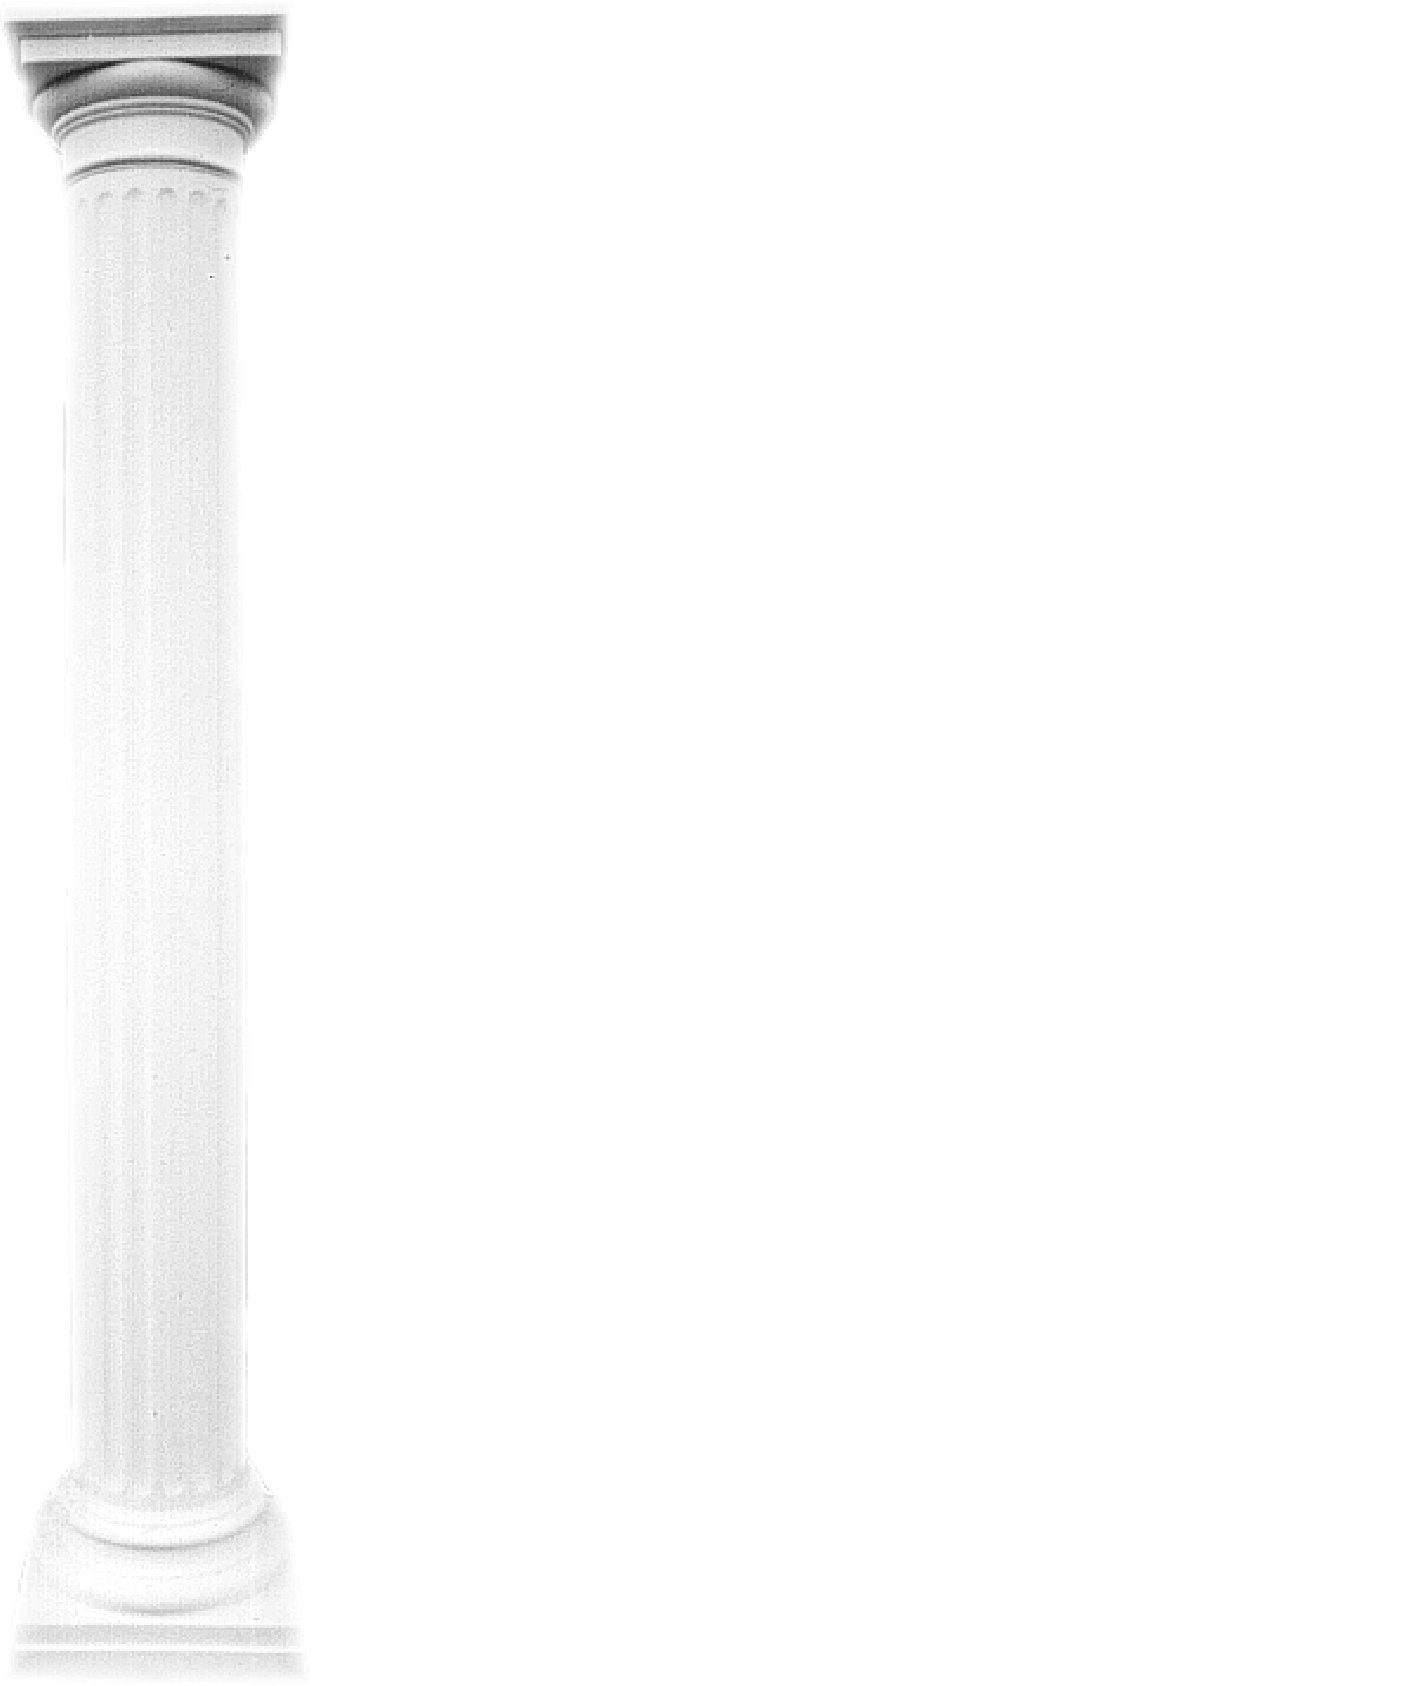 JVmoebel Skulptur XXL Griechische Säule Antik Stil Design Säulen Luxus Neu 214cm Groß